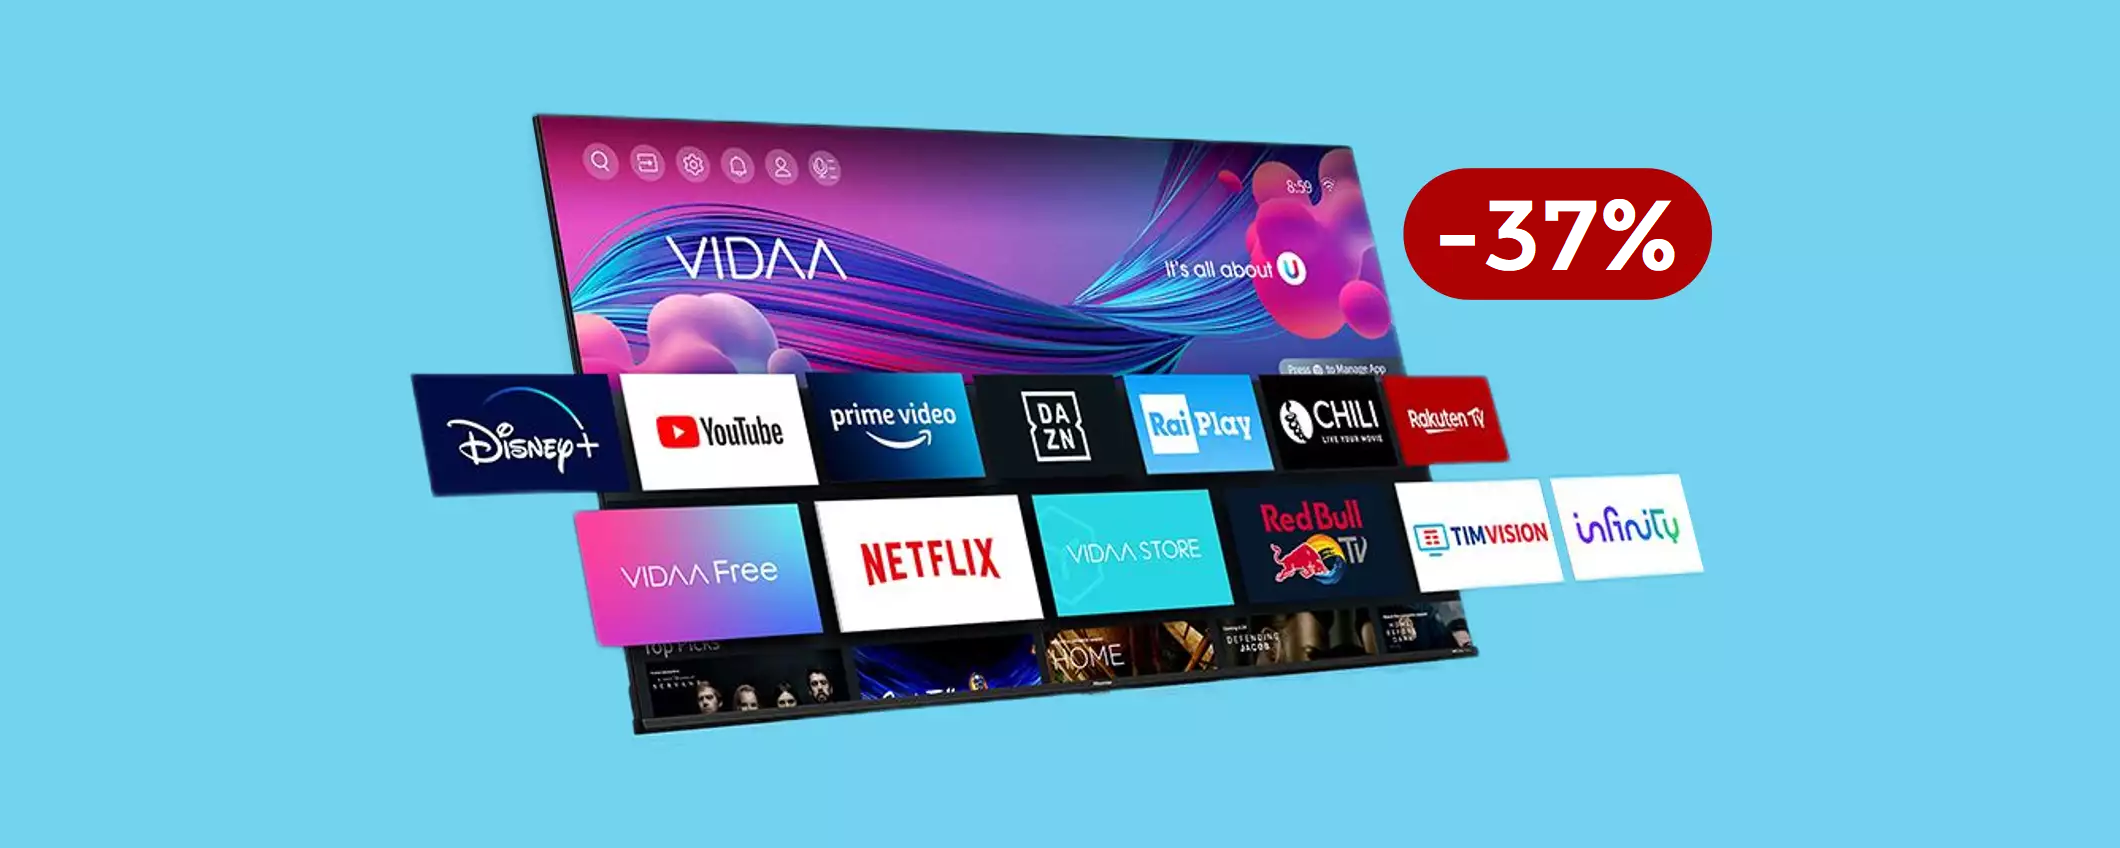 Smart TV 4K Hisense 50 pollici: il prezzo PRECIPITA su Amazon (-220€)